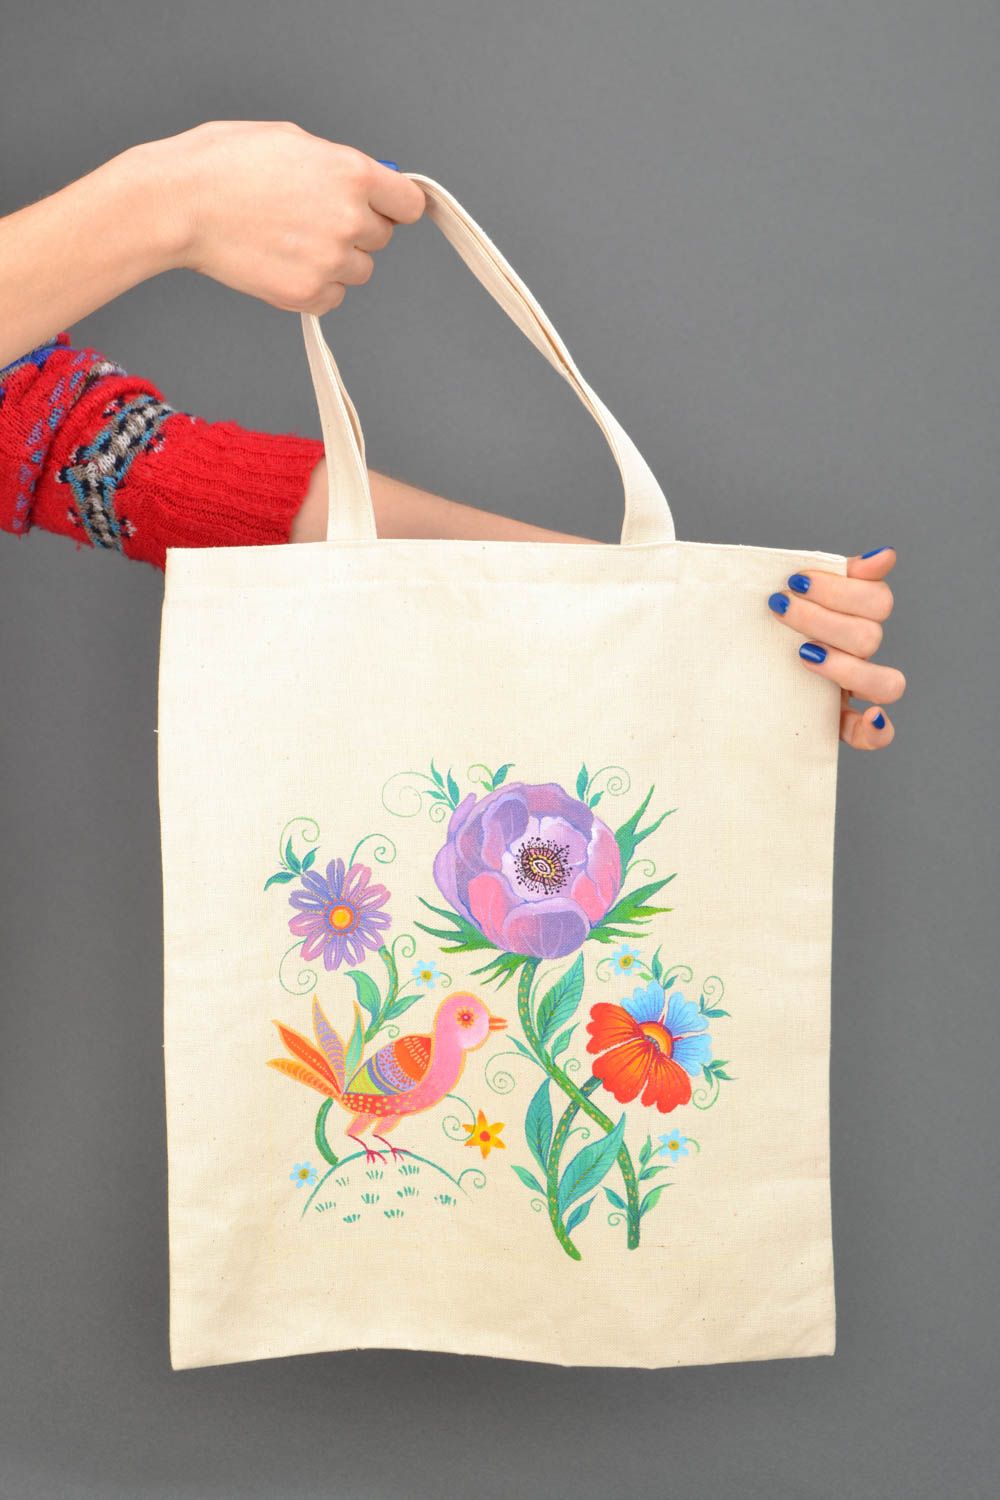 Textil Tasche mit Blumenprint foto 2